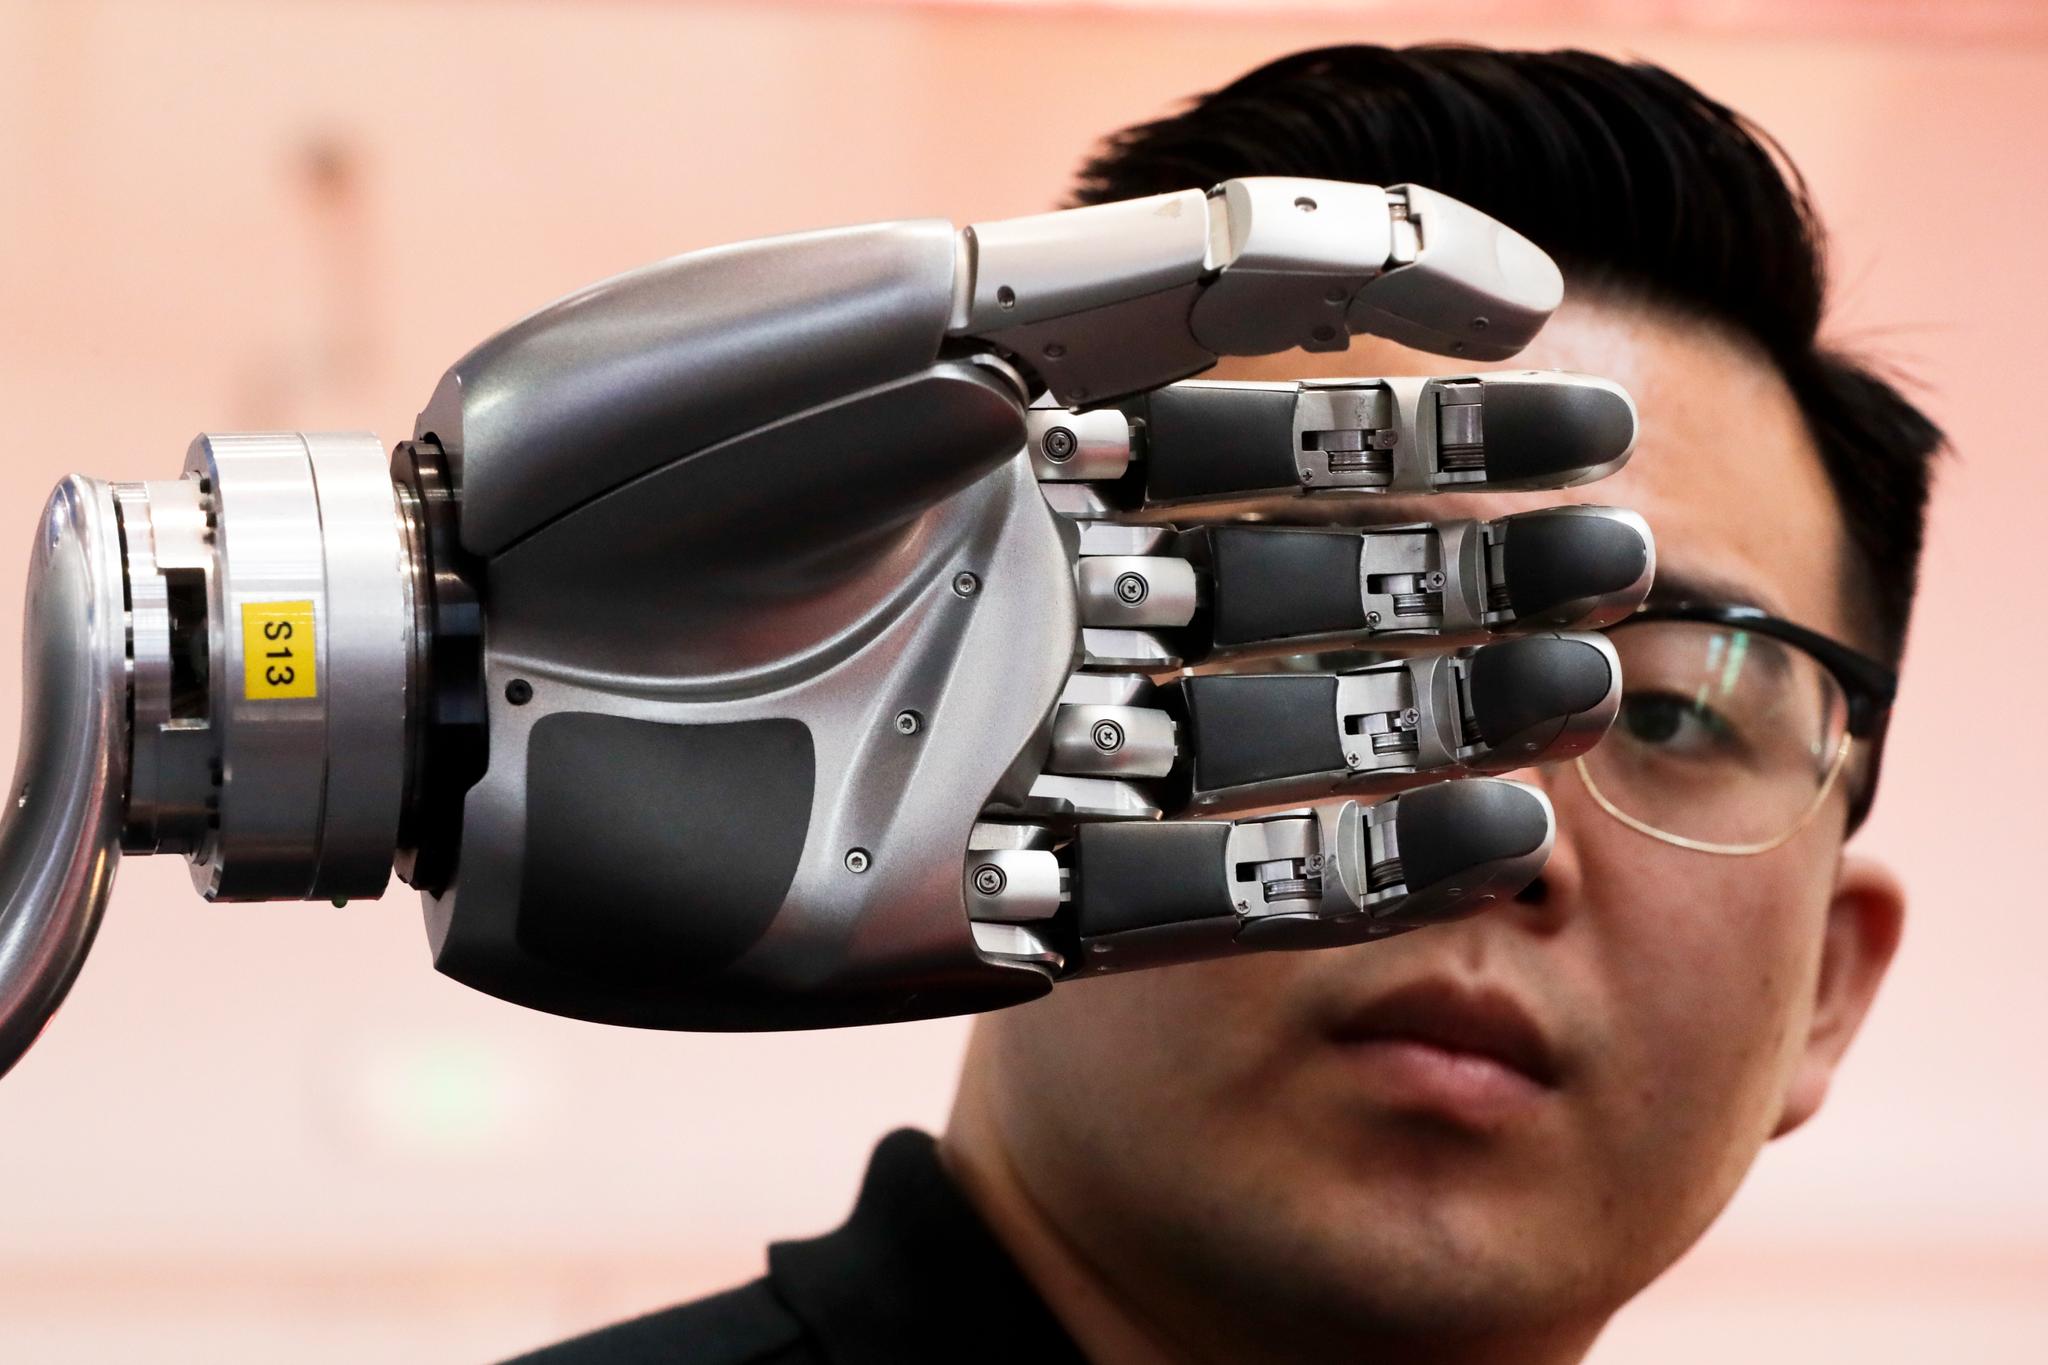 Kan selskapene som utvikler kunstig intelligens, holdes ansvarlige hvis de gambler med vår felles sikkerhet? spør kronikkforfatterne. Her fra en teknologimesse i Kina i 2017.